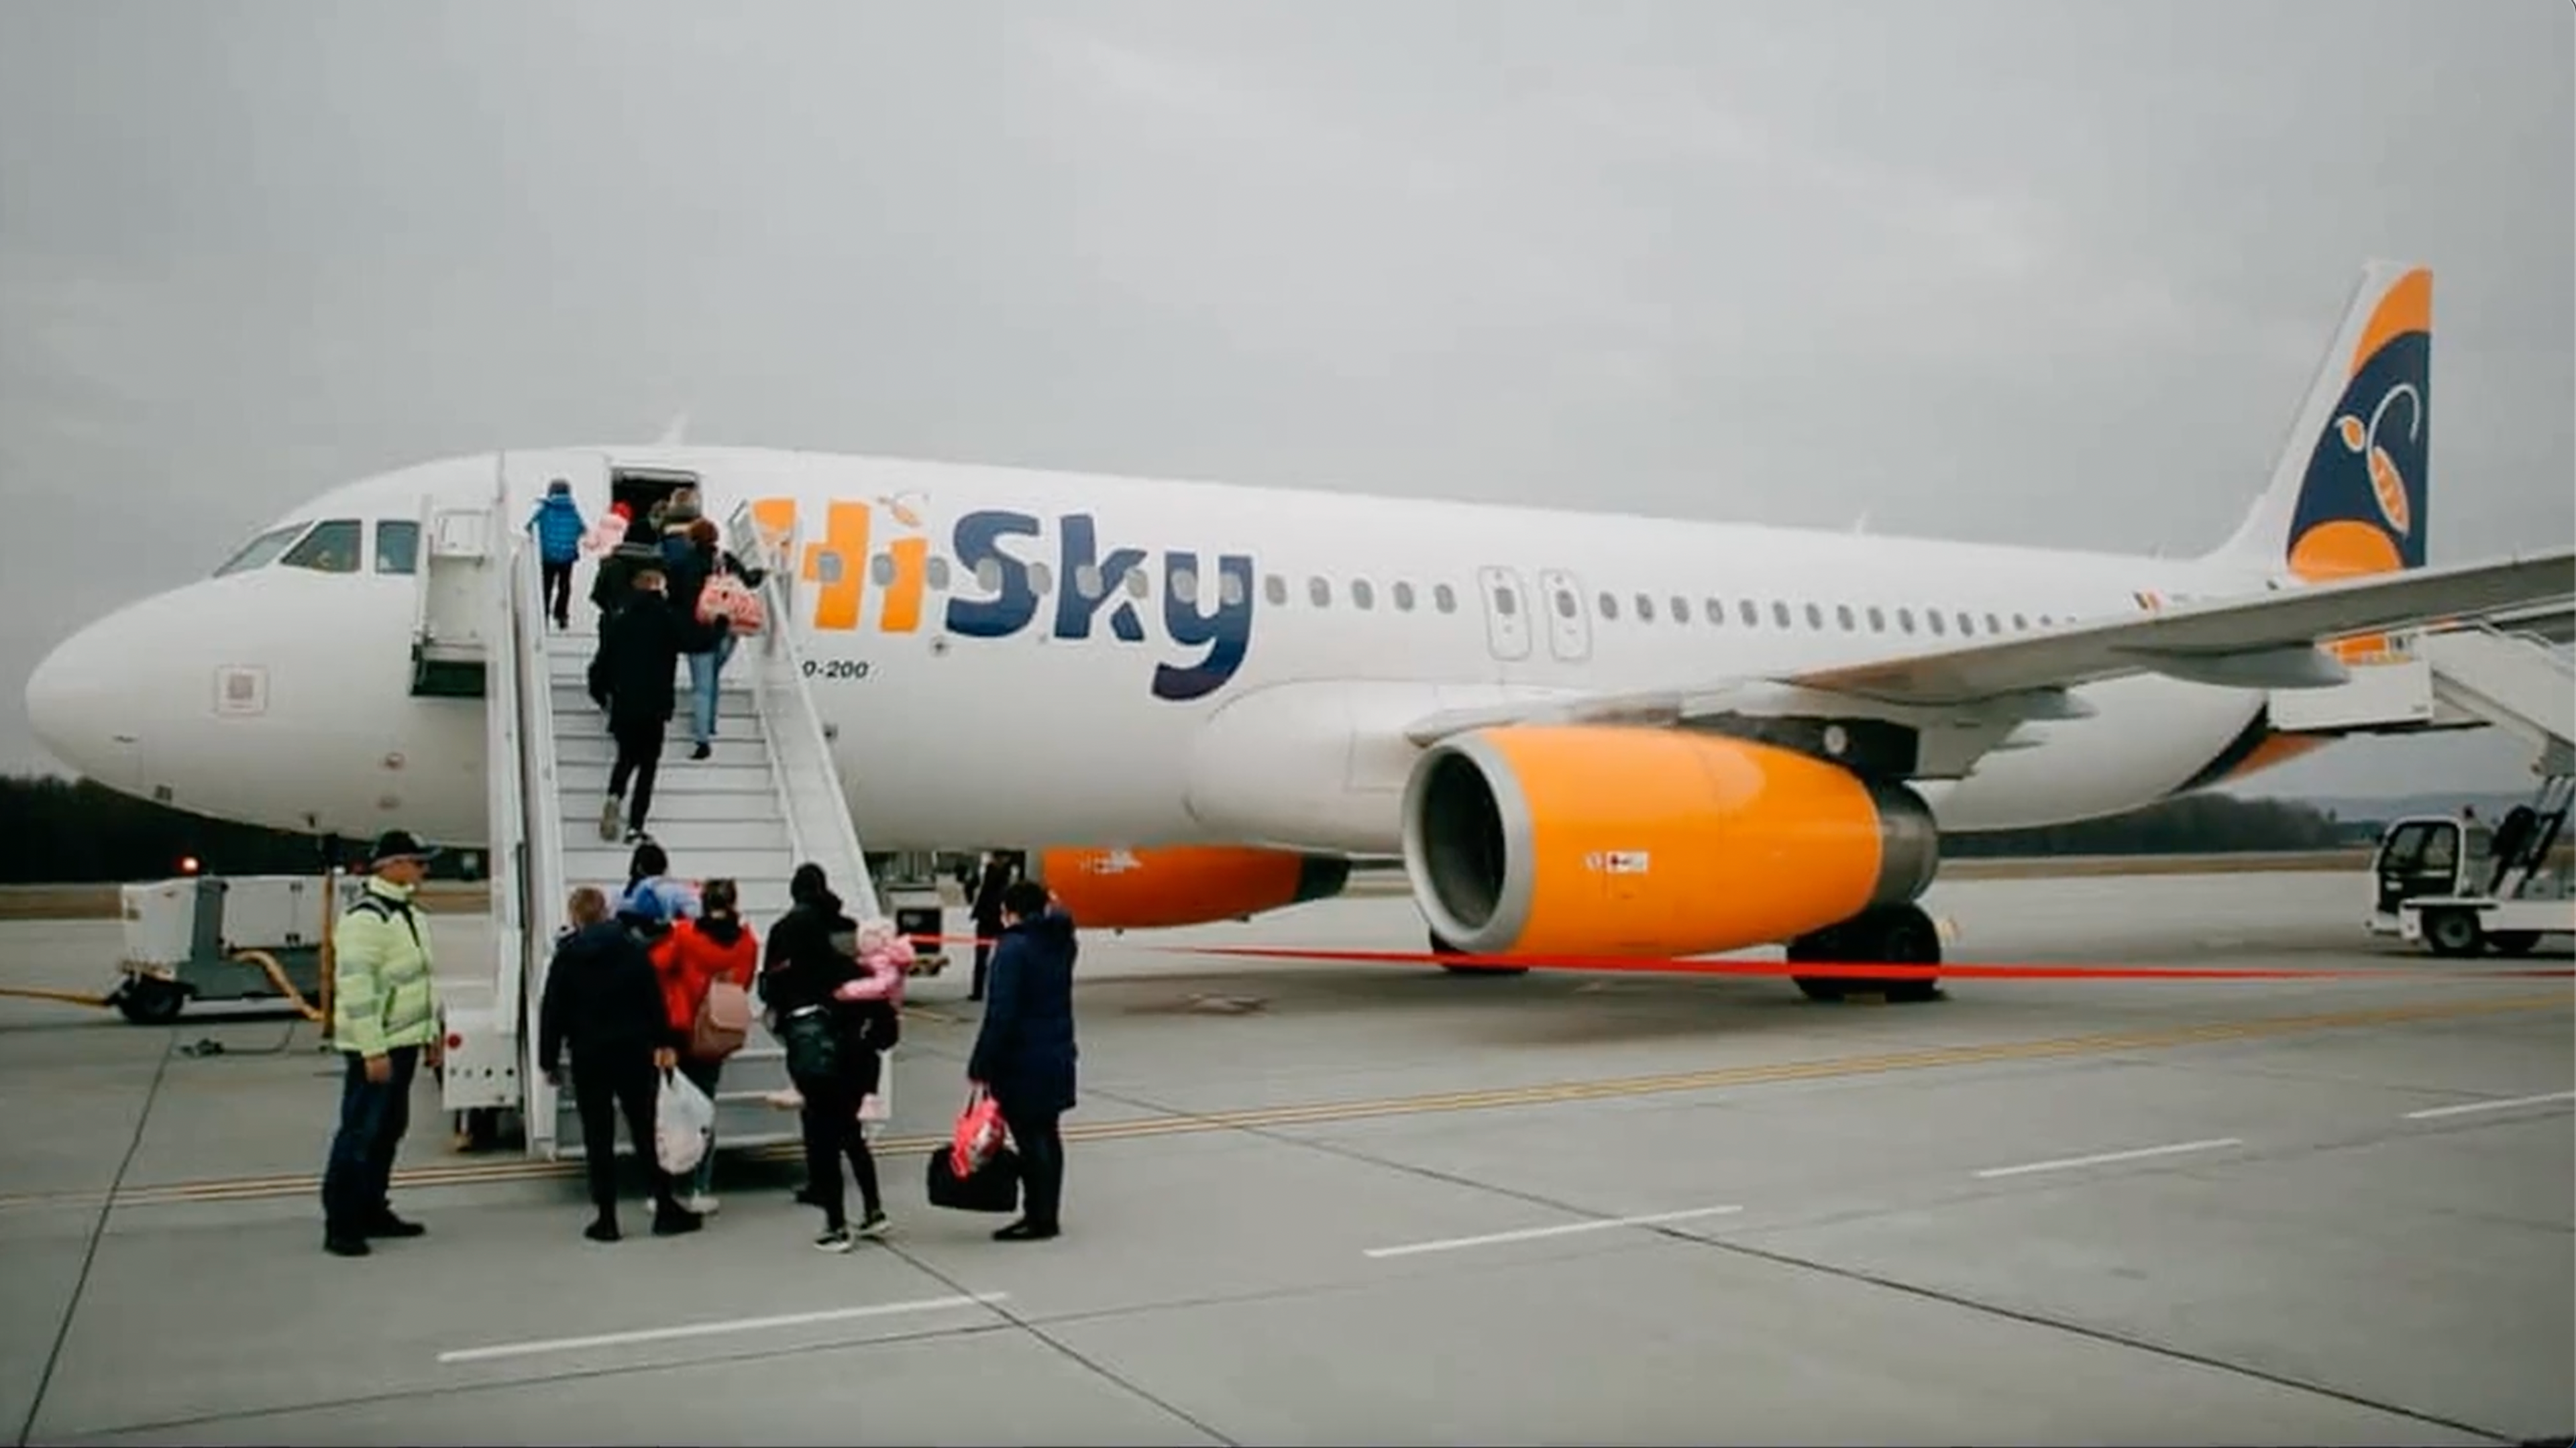 Ukrainian Children Boarding The Plane